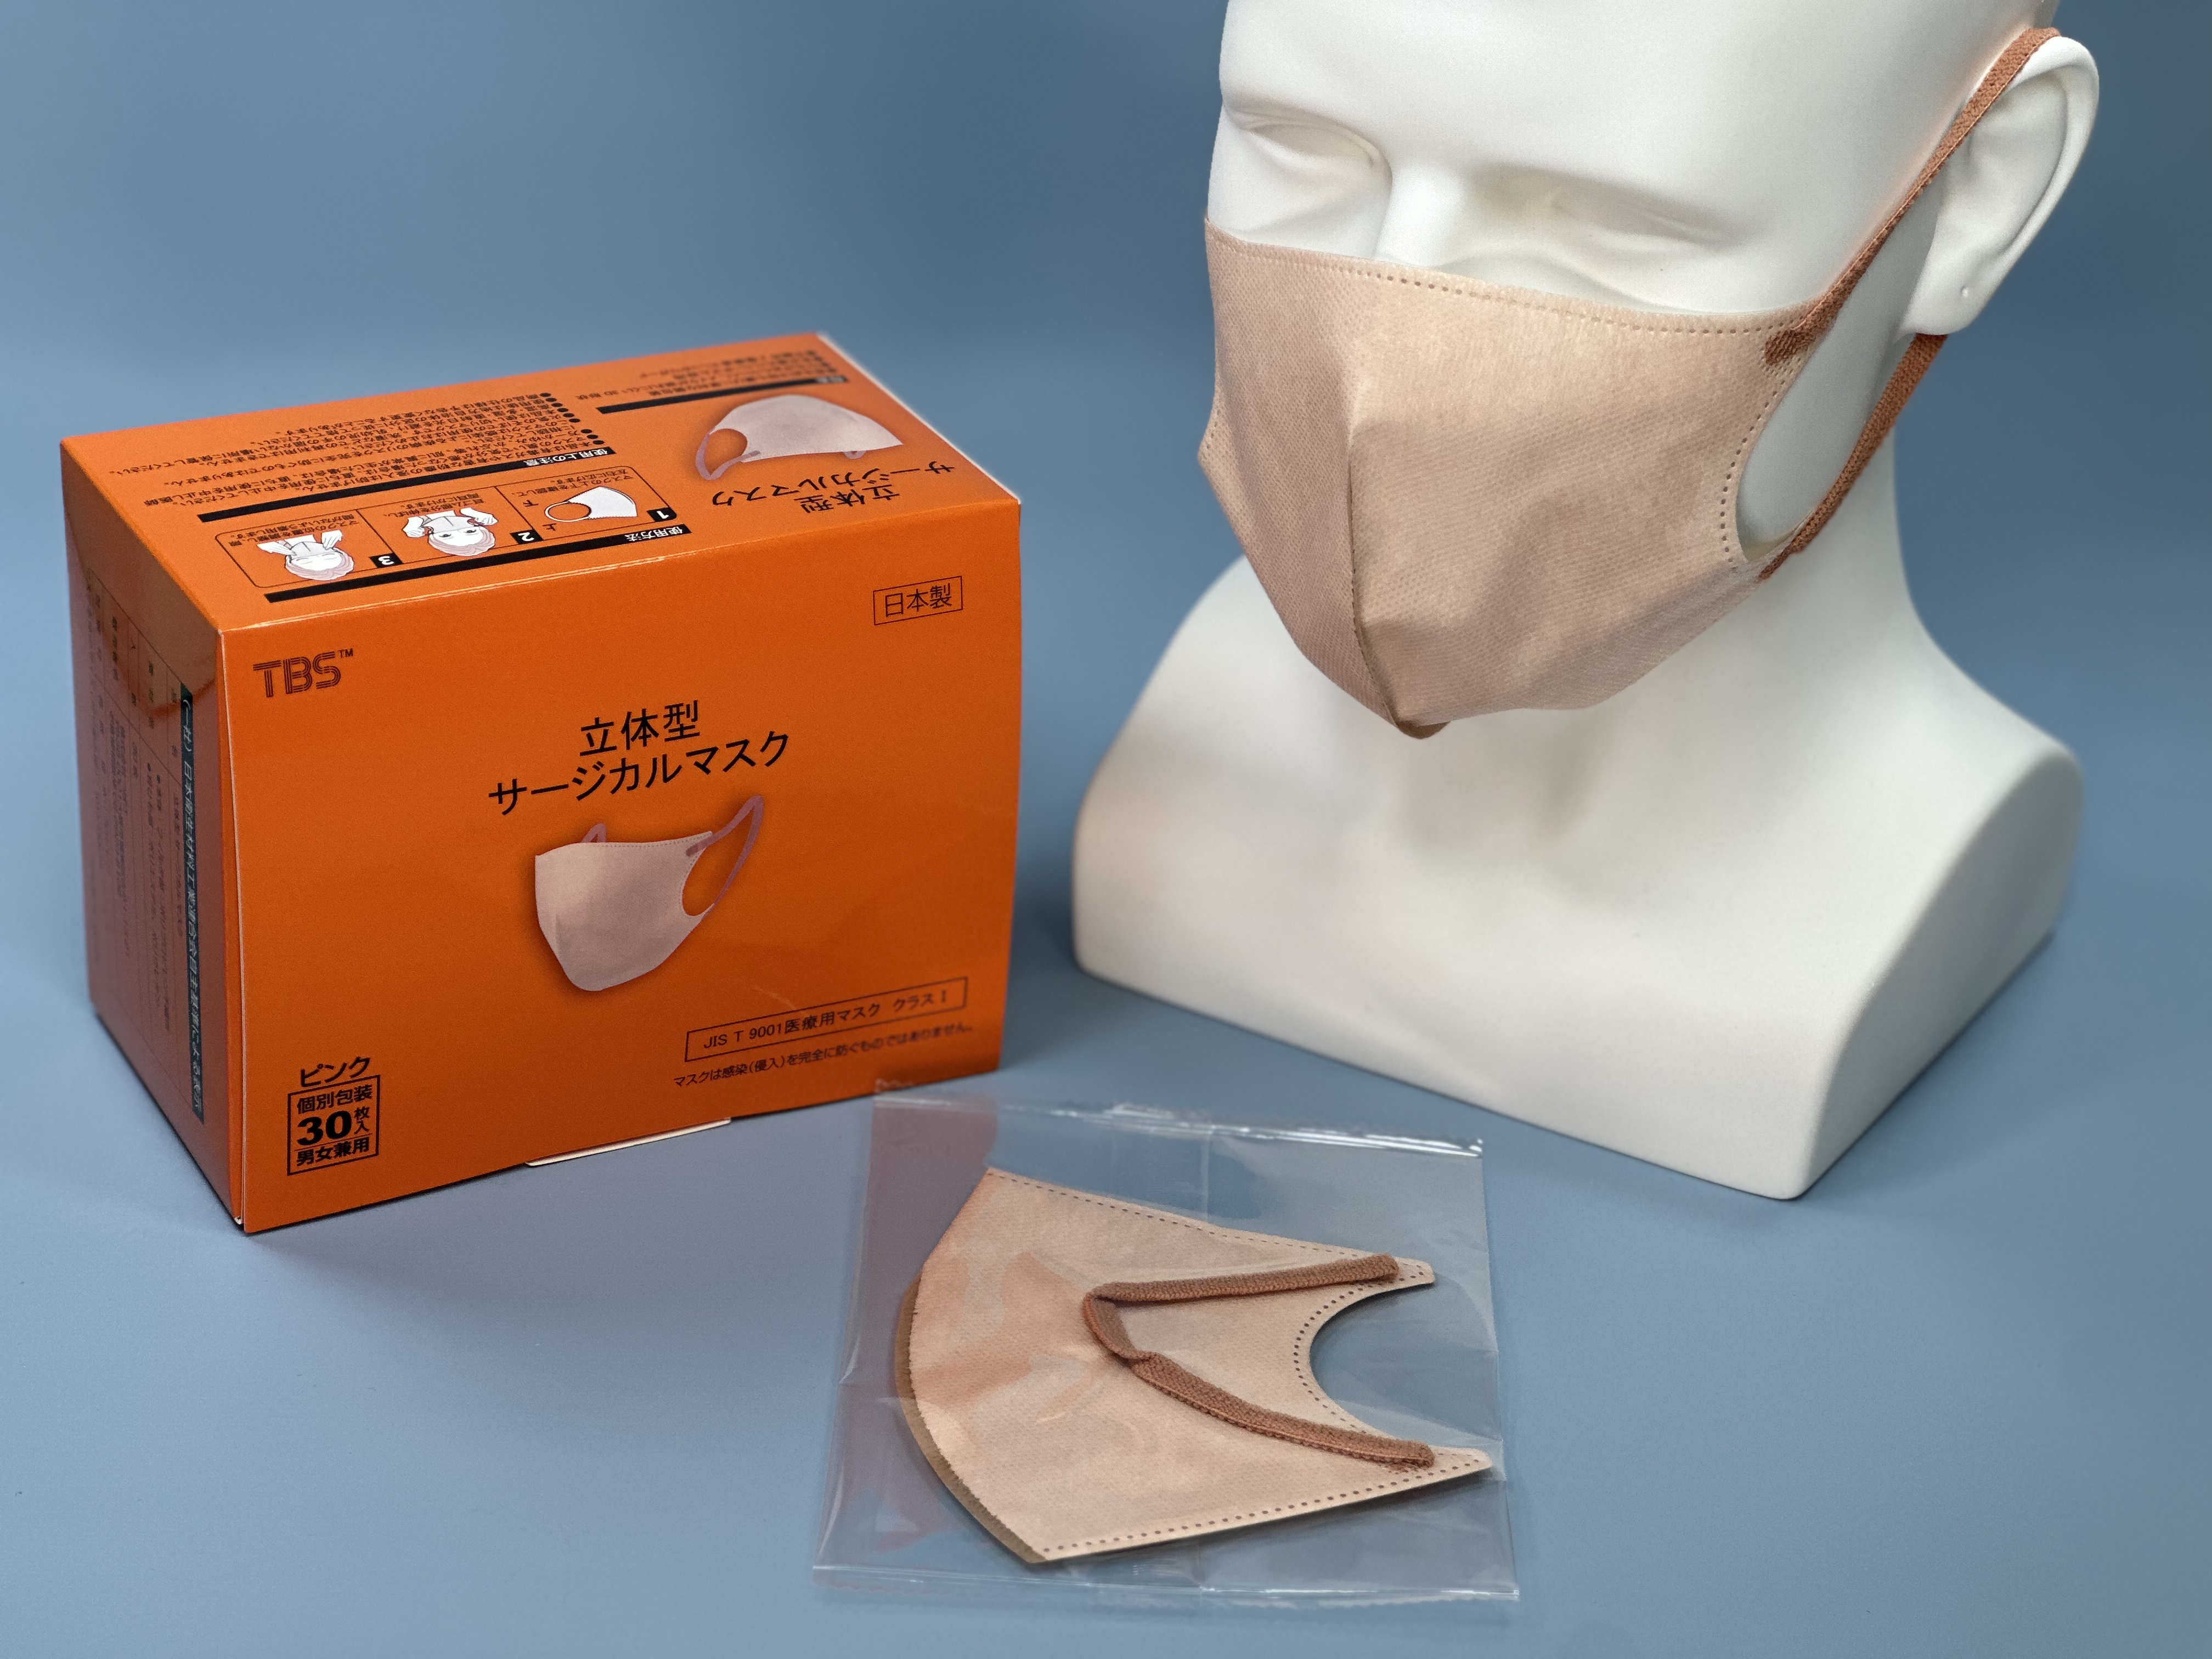 つばさ(Tsubasa) 日本製 TBS 立体型サージカルマスク・個包装・3層構造 (JIS T9001 医療用マスク クラスⅠ適合審査合格品) 医療用立体マスク ピンク/フリーサイズ 1BOX-30枚入り